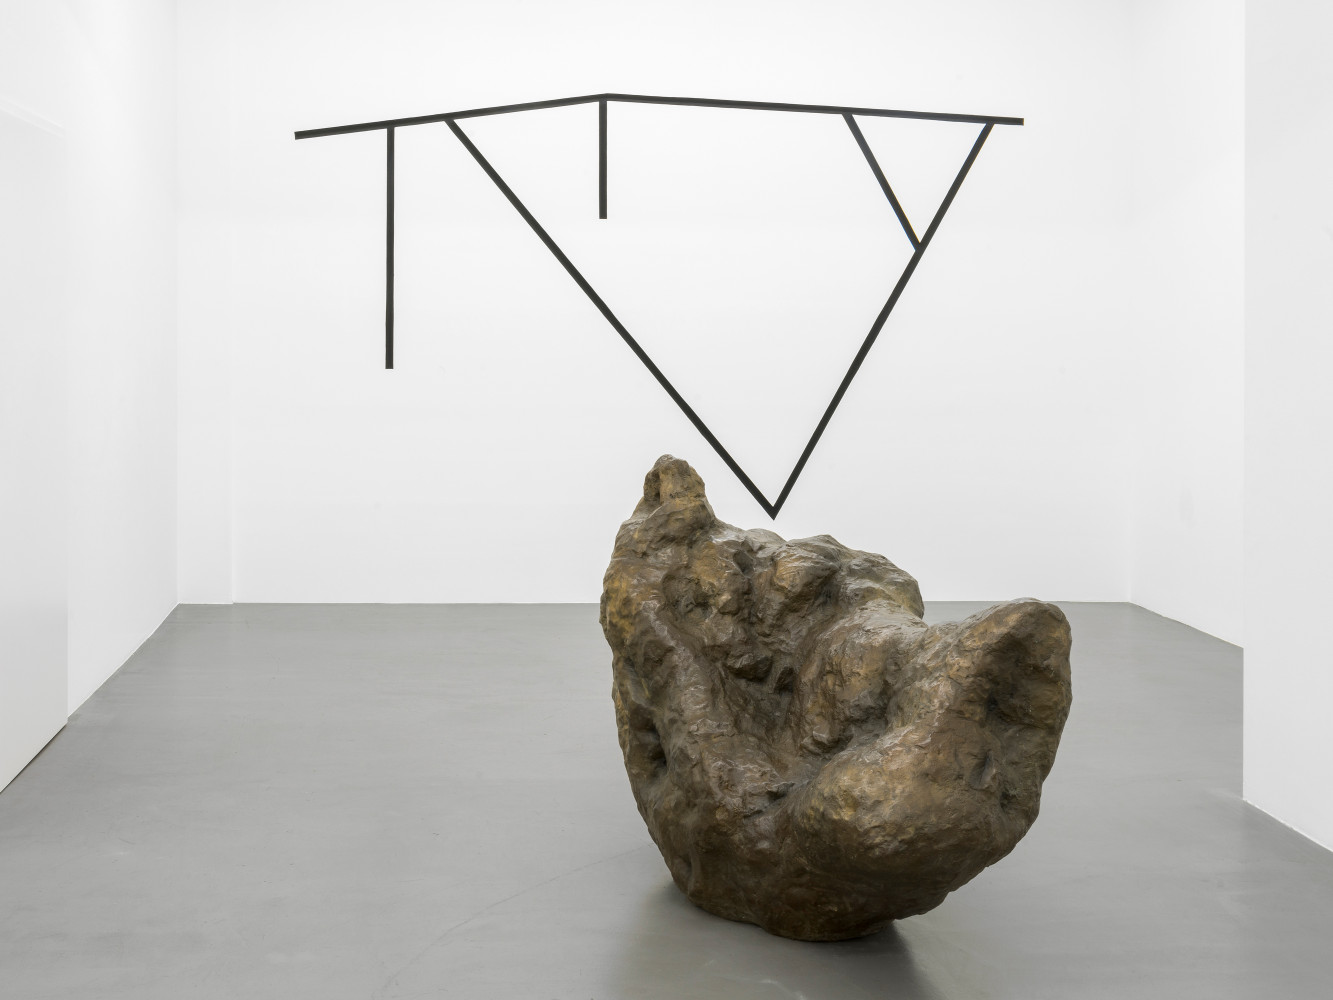 William Tucker, ‘William Tucker – Figure Advancing’, Installationsansicht, Buchmann Galerie, 2020